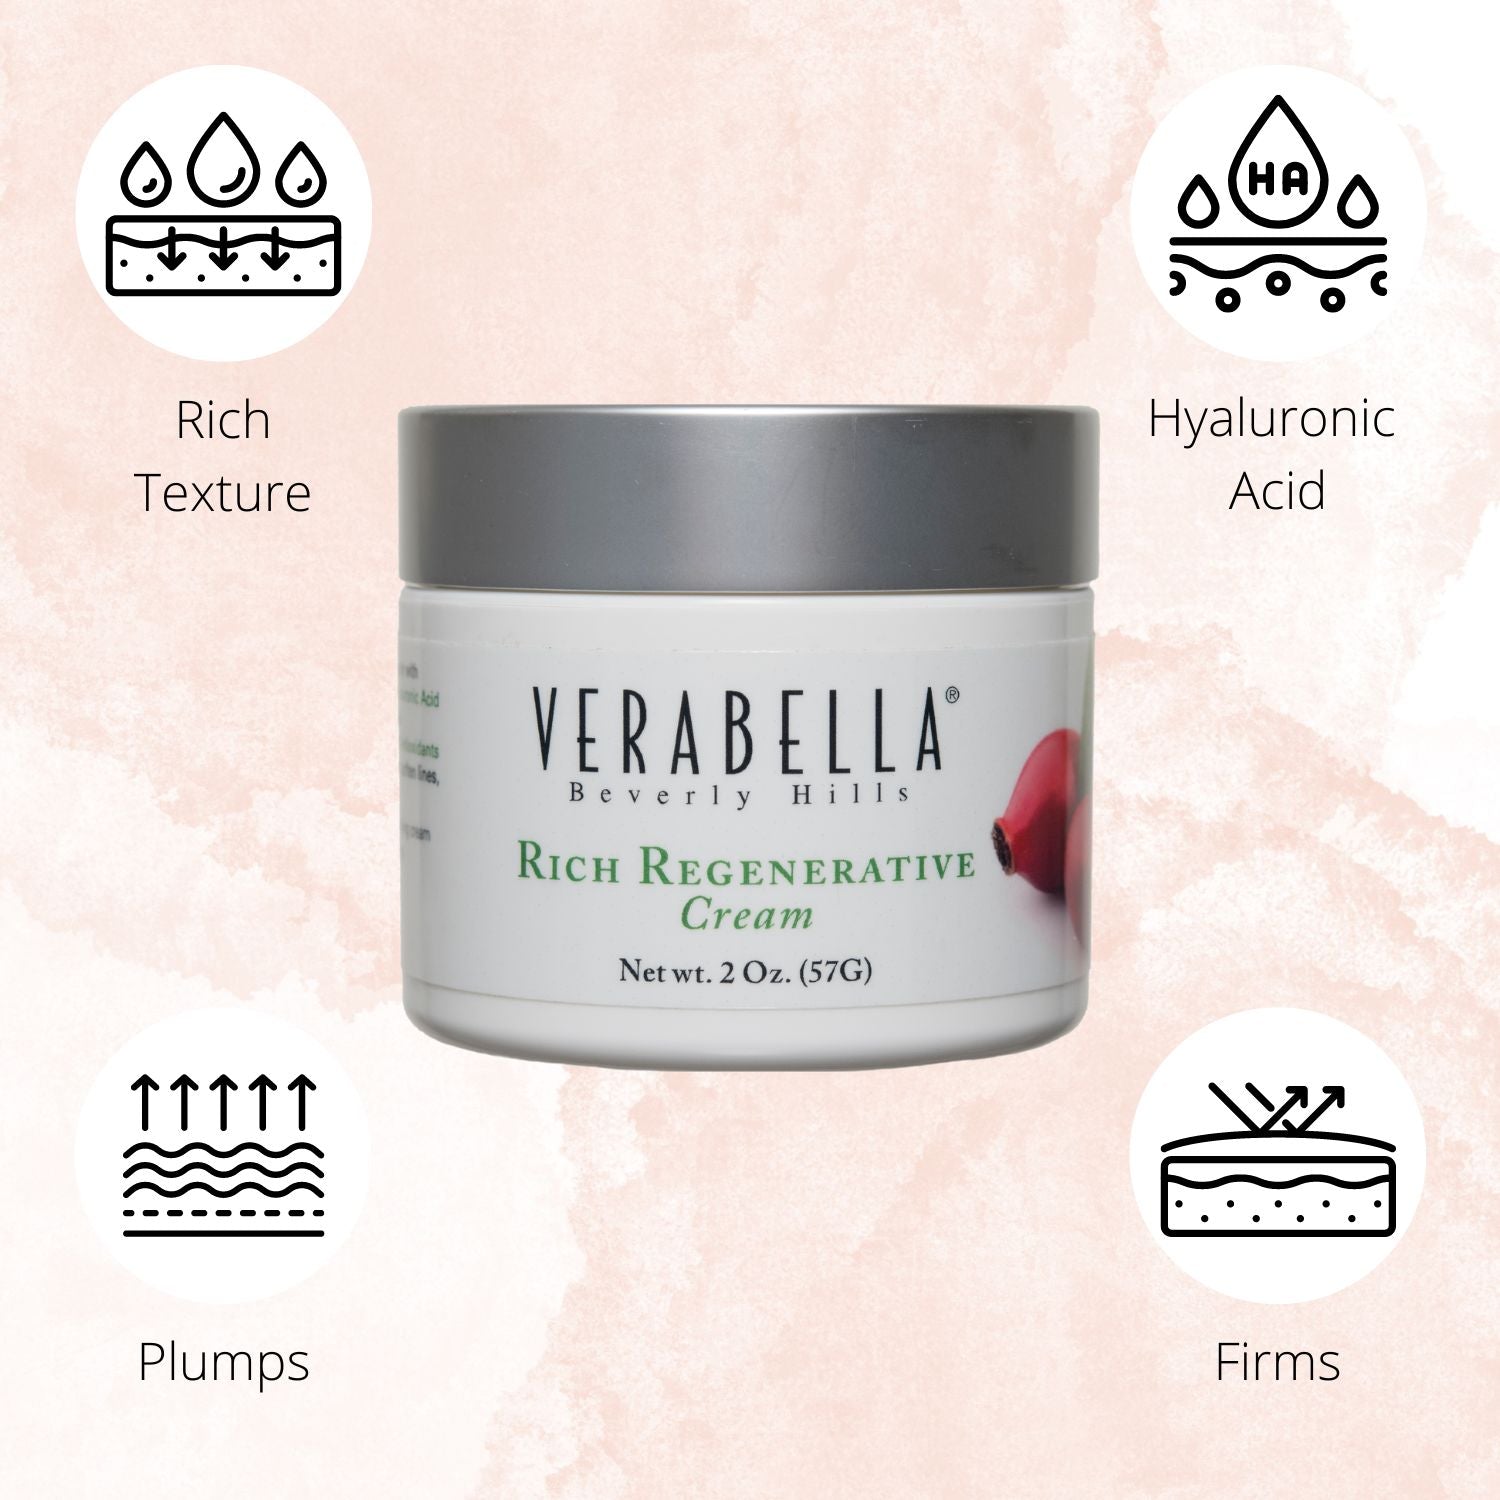 Verabella Rich Regenerative Cream is a rich firming moisturizer.